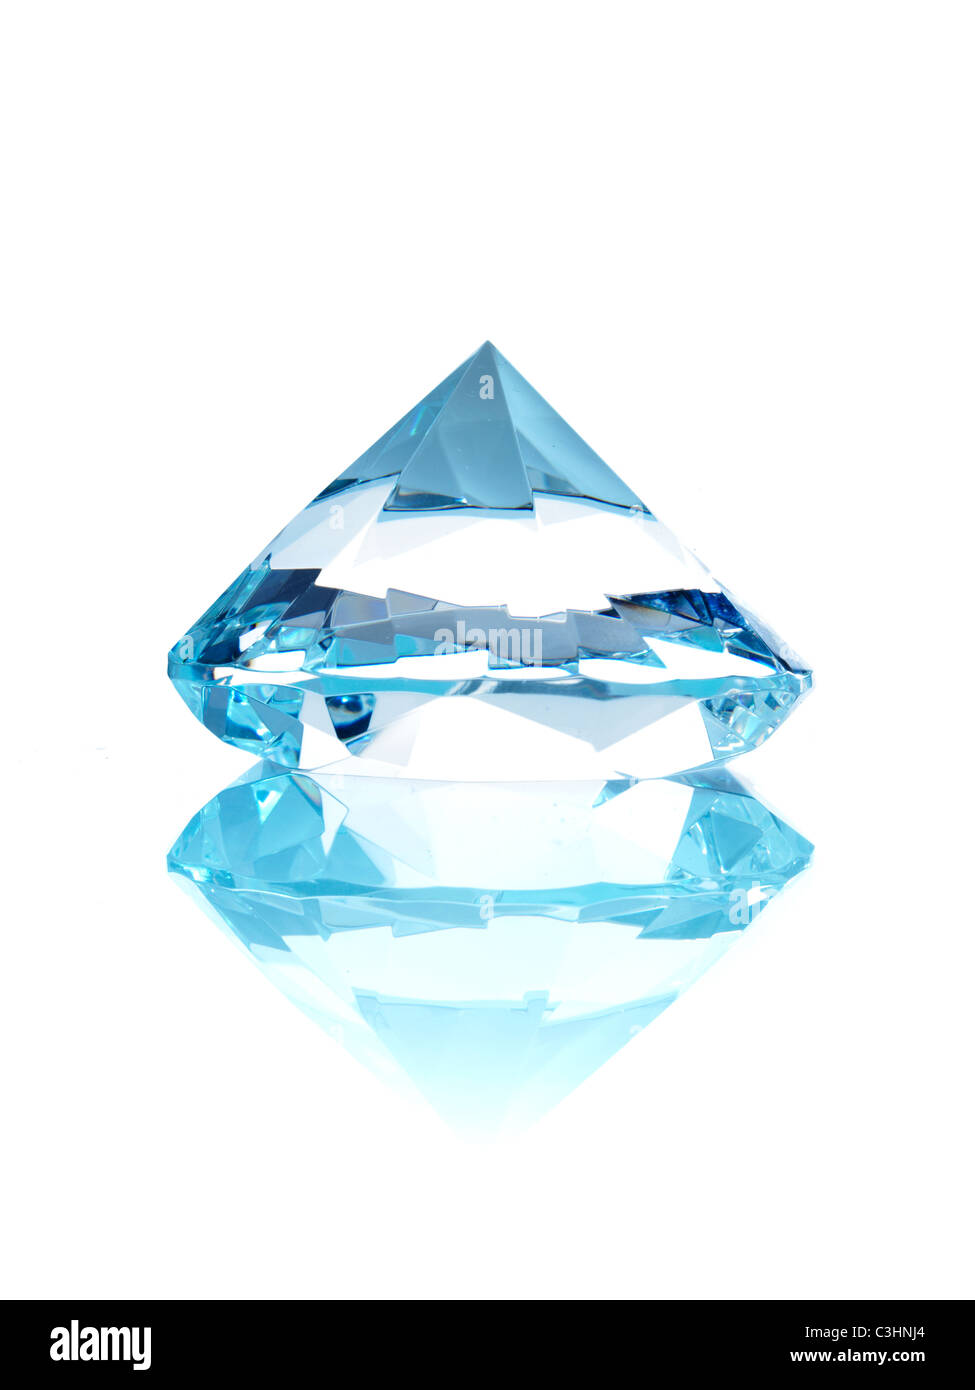 Diamond on white background Stock Photo